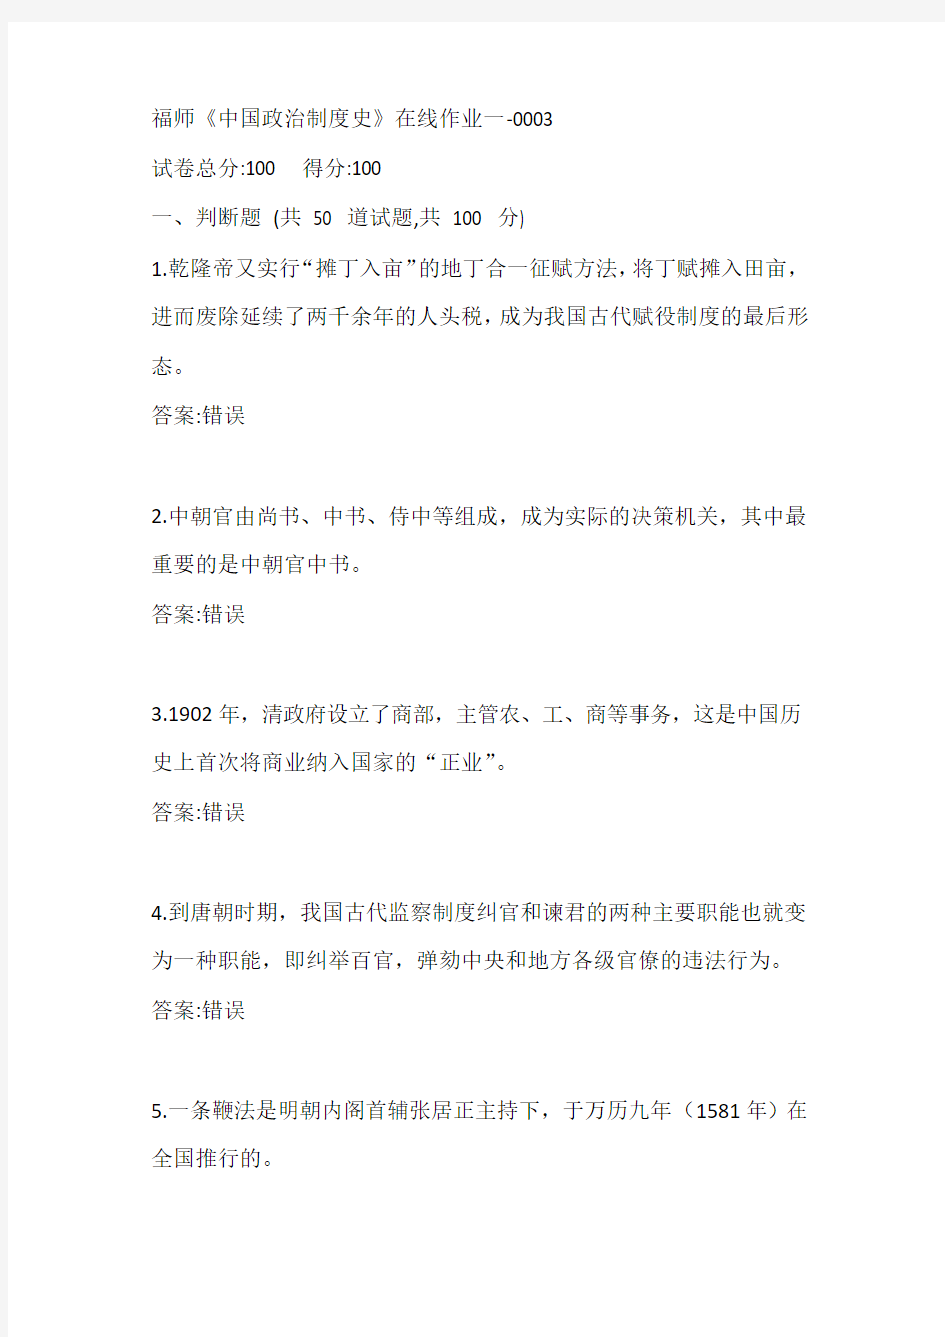 福师《中国政治制度史》在线作业一-0003参考答案